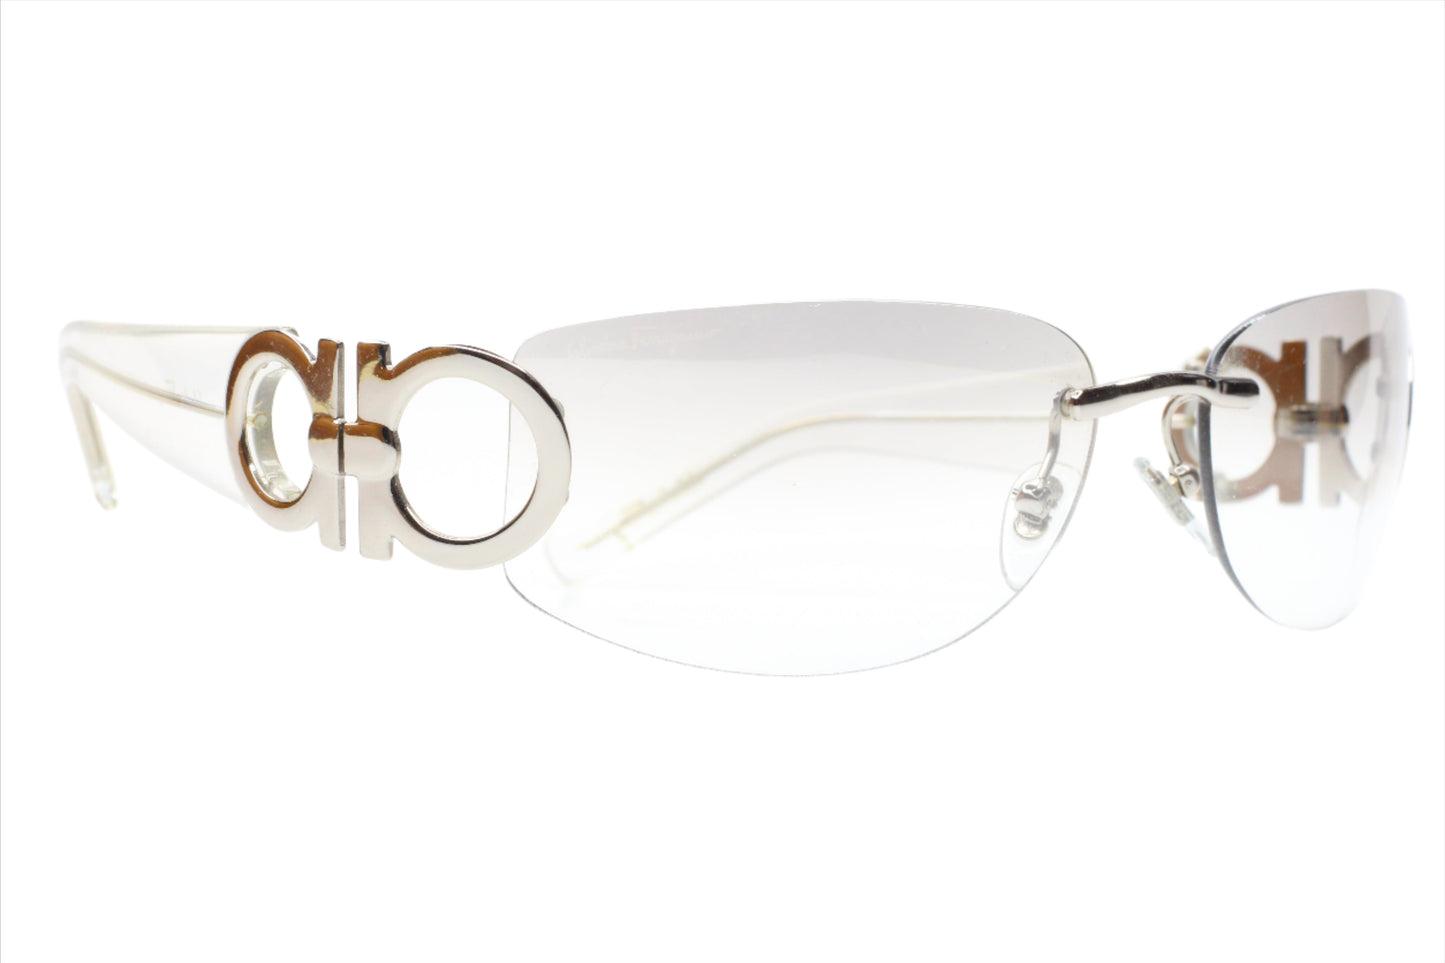 Salvatore Ferragamo SF1047 511/61 Clear Silver Rimless Sunglasses